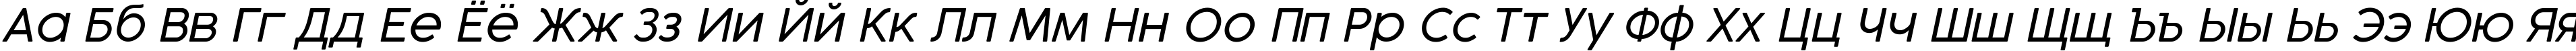 Пример написания русского алфавита шрифтом Cocogoose Pro Light Italic